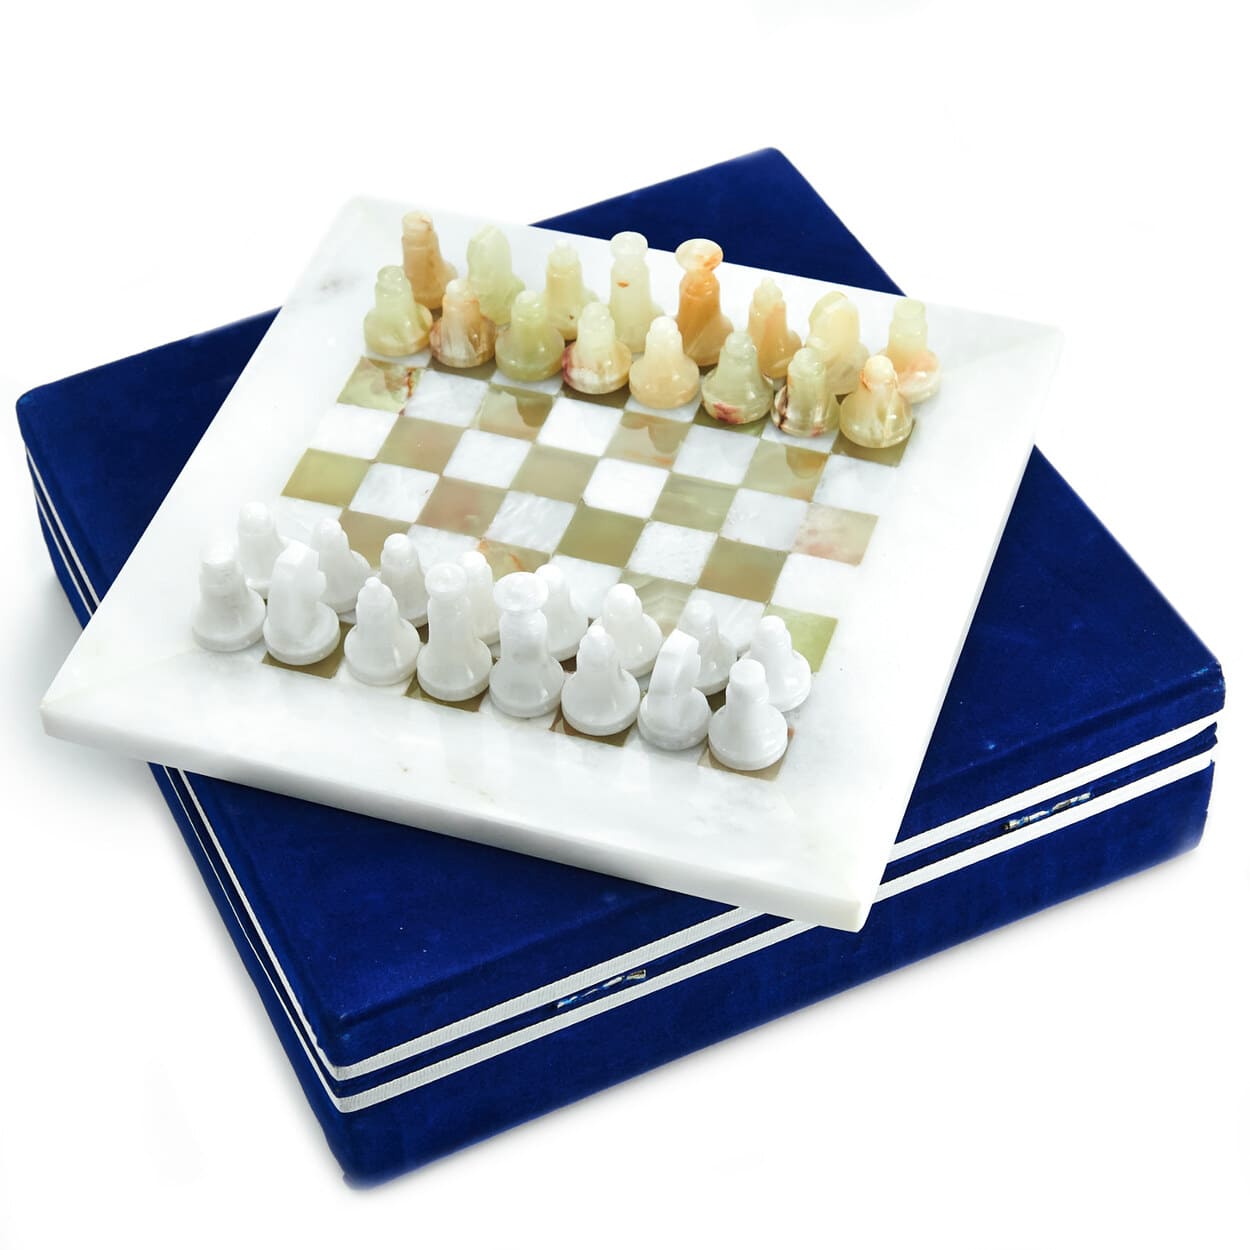 Шахматы каменные PakShah Оникс и Мрамор 20, ON-W006 набор подсвечников с иглой 6шт оникс